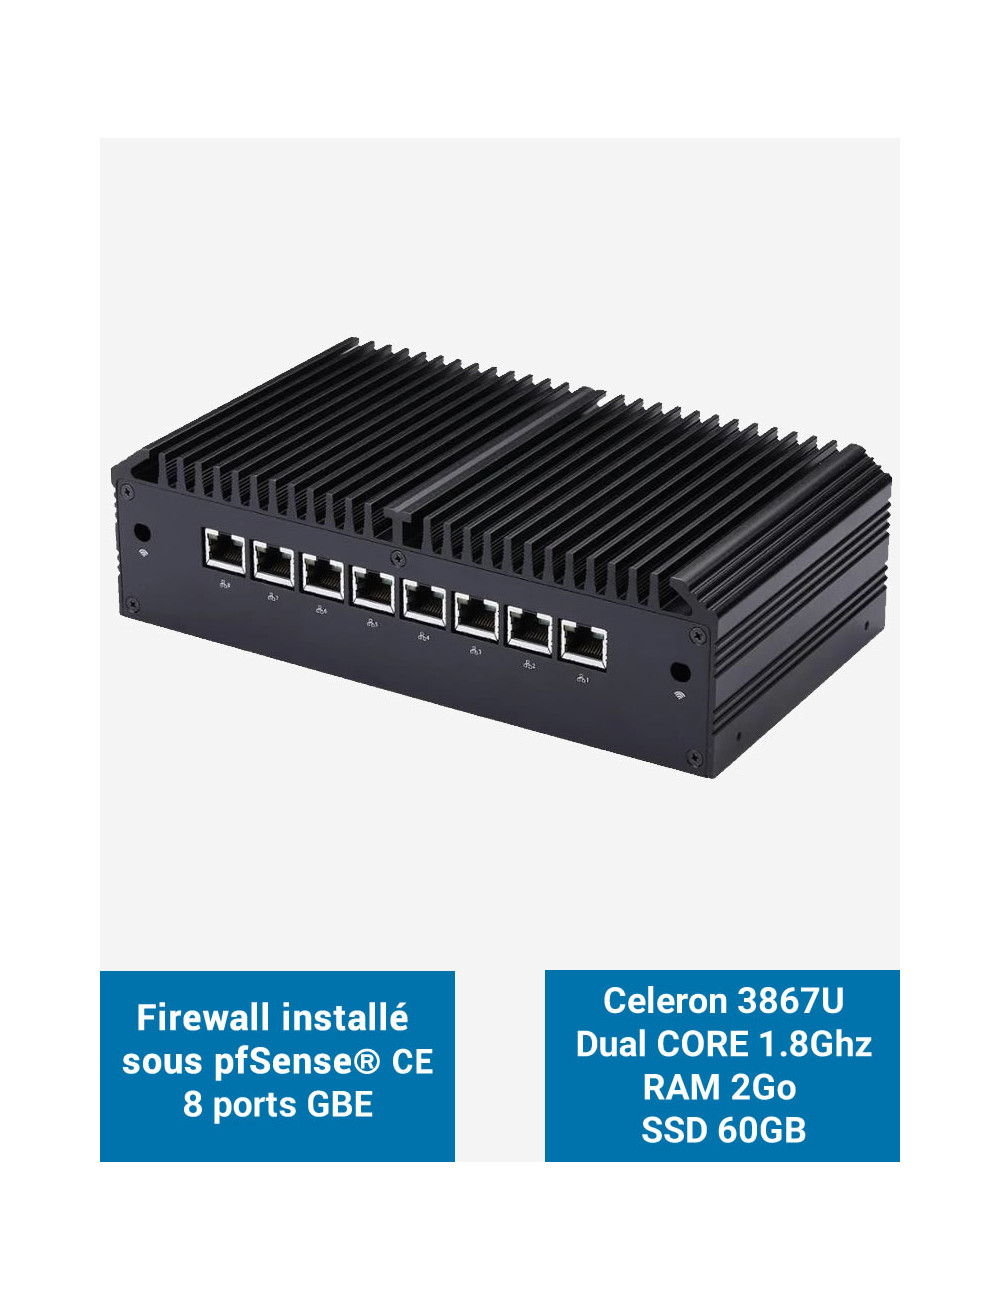 Firewall Q8x Celeron 3867U 8 ports GbE 2GB 60GB